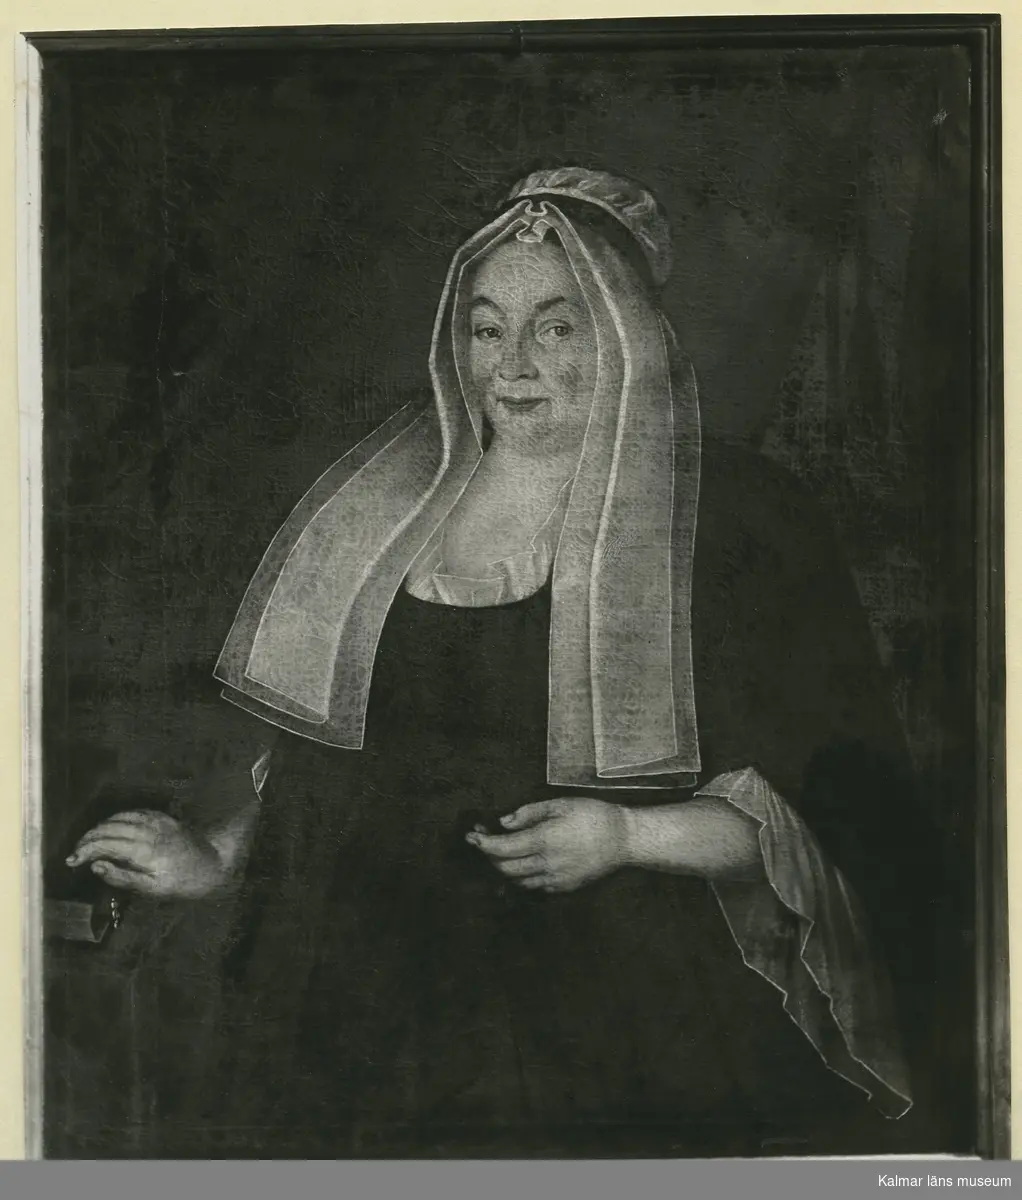 Porträtt av Anna Wallin född Hellman, maka till kyrkoherde J Wallin, Odensvi.  Målning i Odensvi kyrka av Edvard Orm 1725.